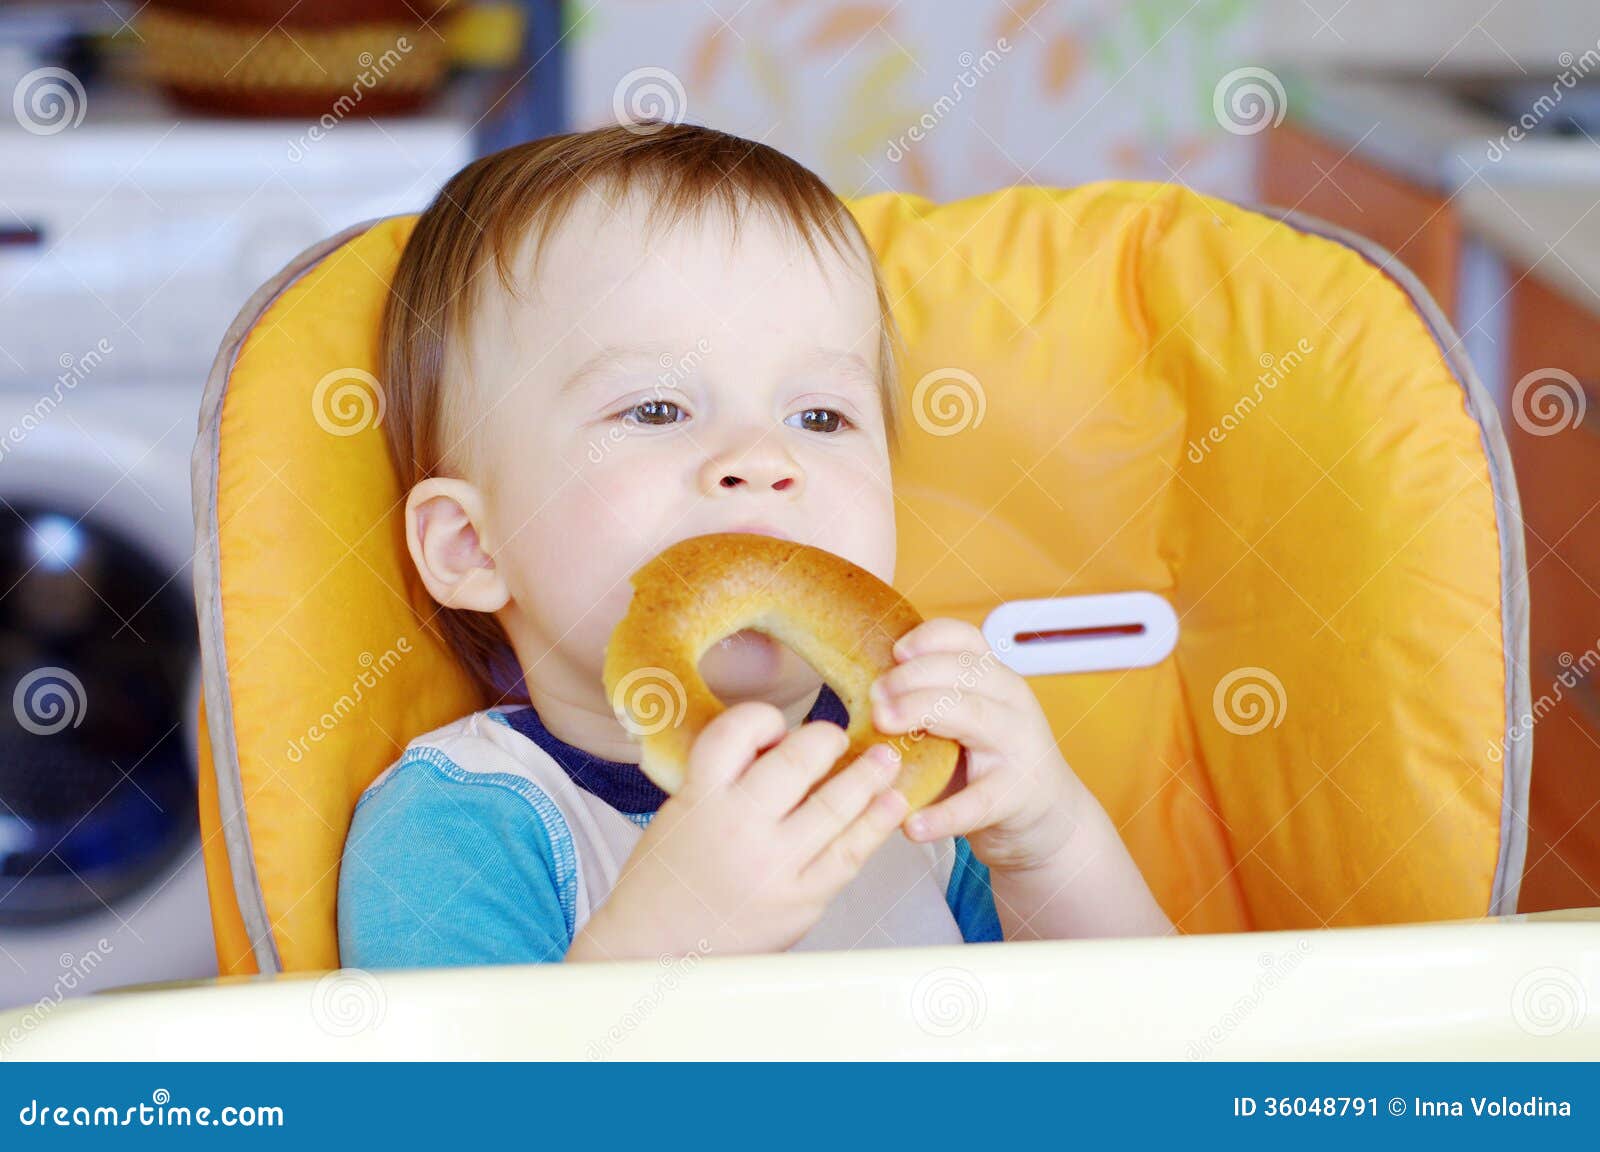 happy baby eating round cracknel